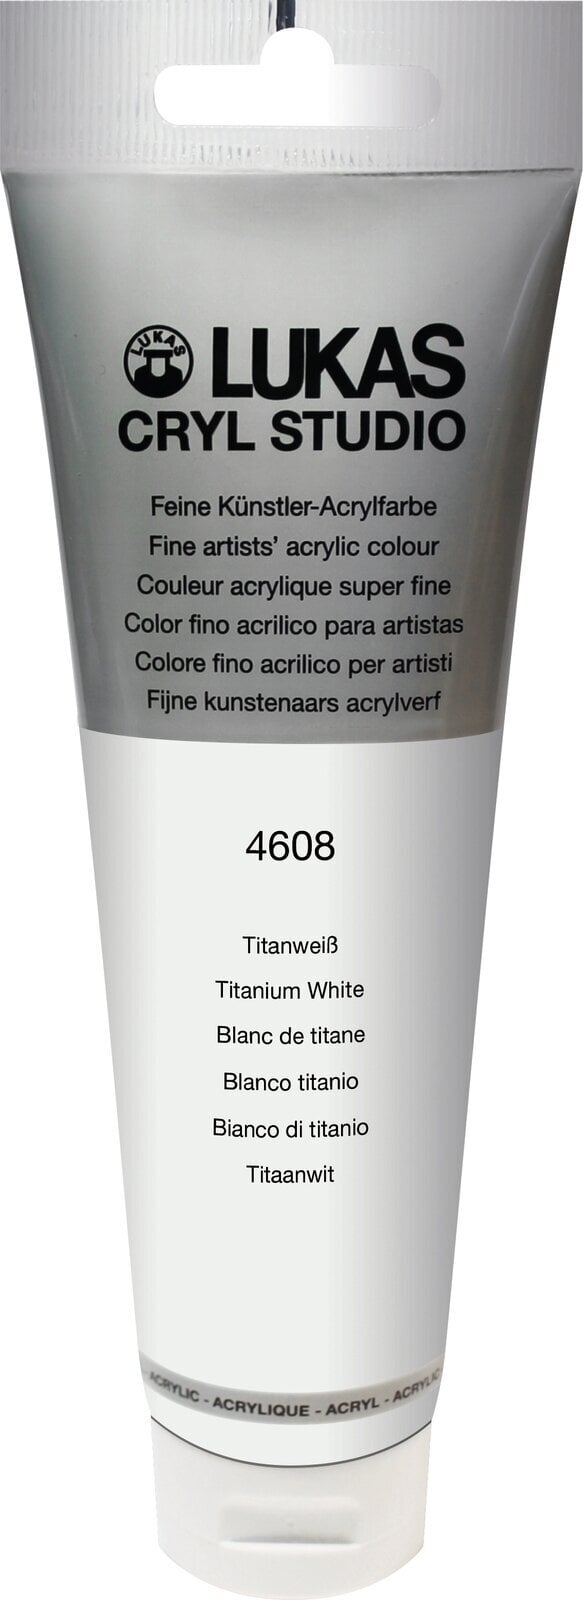 Farba akrylowa Lukas Cryl Studio Farba akrylowa 125 ml Titanium White